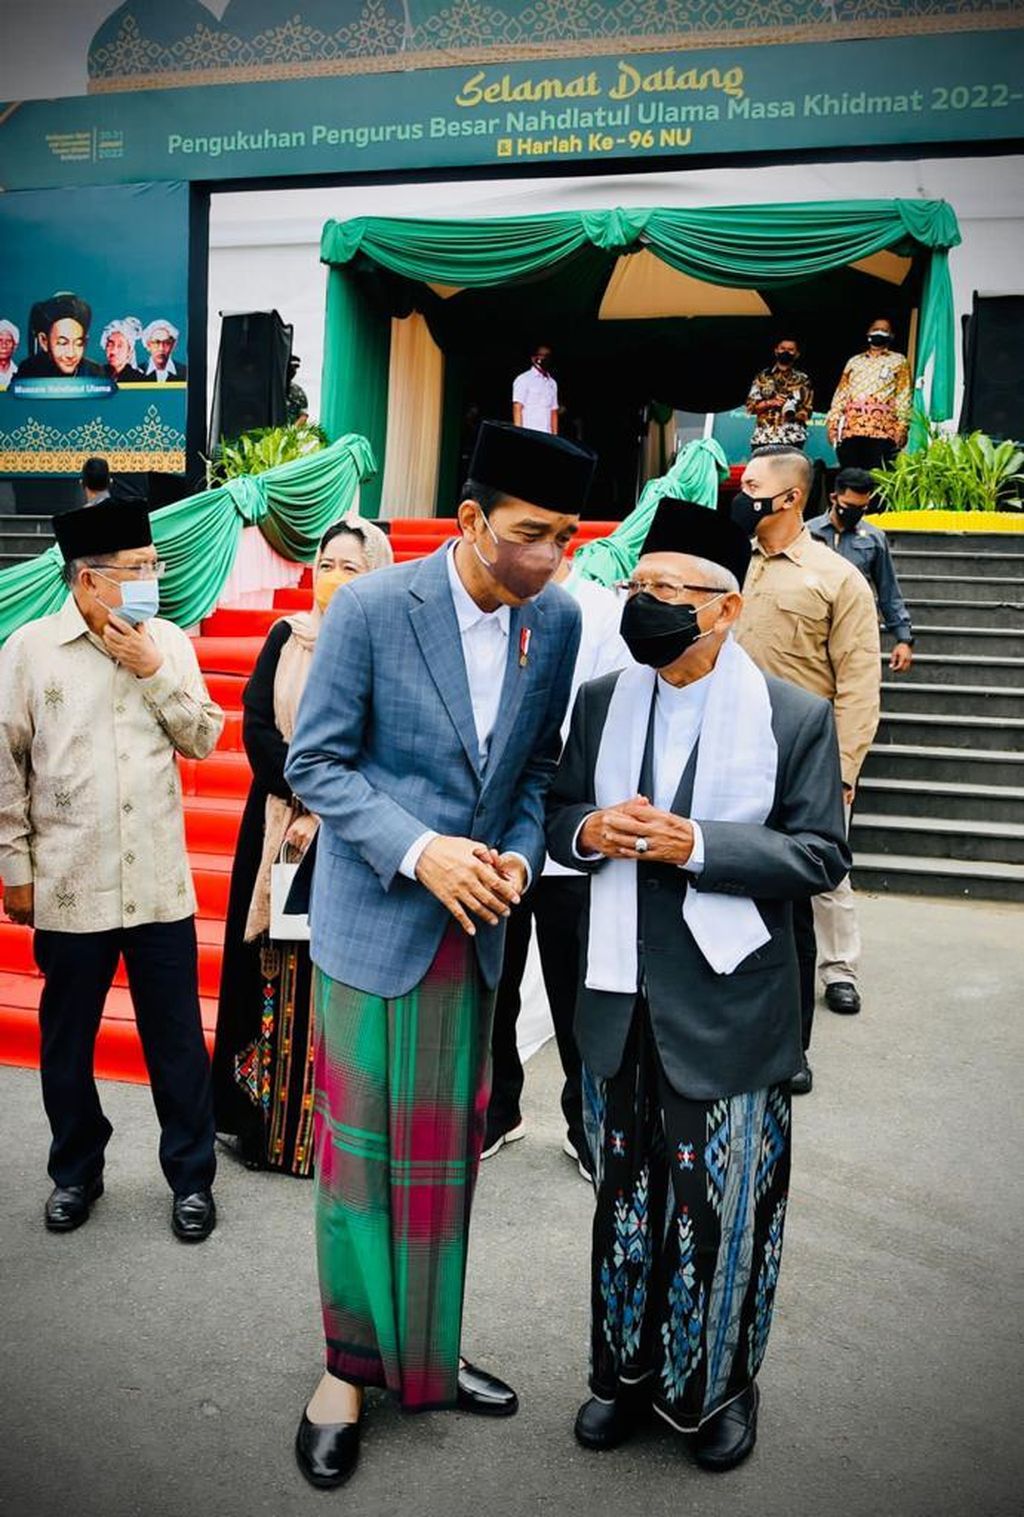 Presiden Joko Widodo dan Wakil Presiden Maruf Amin saat menghadiri acara pengukuhan Pengurus Besar Nahdlatul Ulama (PBNU) Masa Khidmat 2022-2027 dan Hari Ulang Tahun ke-96 NU yang digelar di Balikpapan Sport and Convention Center, Kota Balikpapan, Provinsi Kalimantan Timur, Senin (31/1/2021).